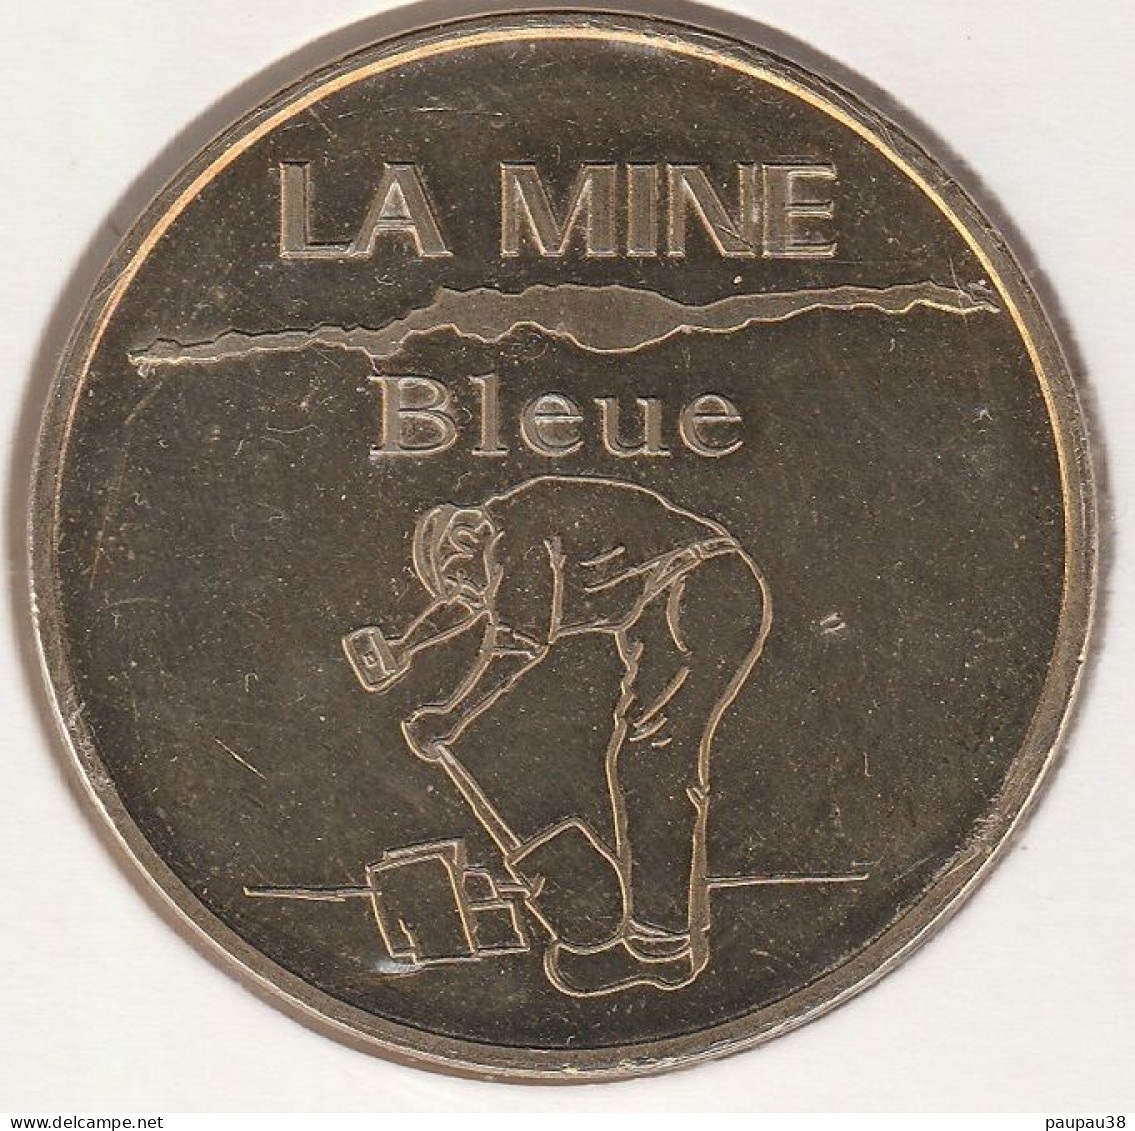 M.D.P. 2007 - 49 NOYANT-LA-GRAVOYÈRE La Mine Bleue - Le Tailleur D'Ardoise - 2007